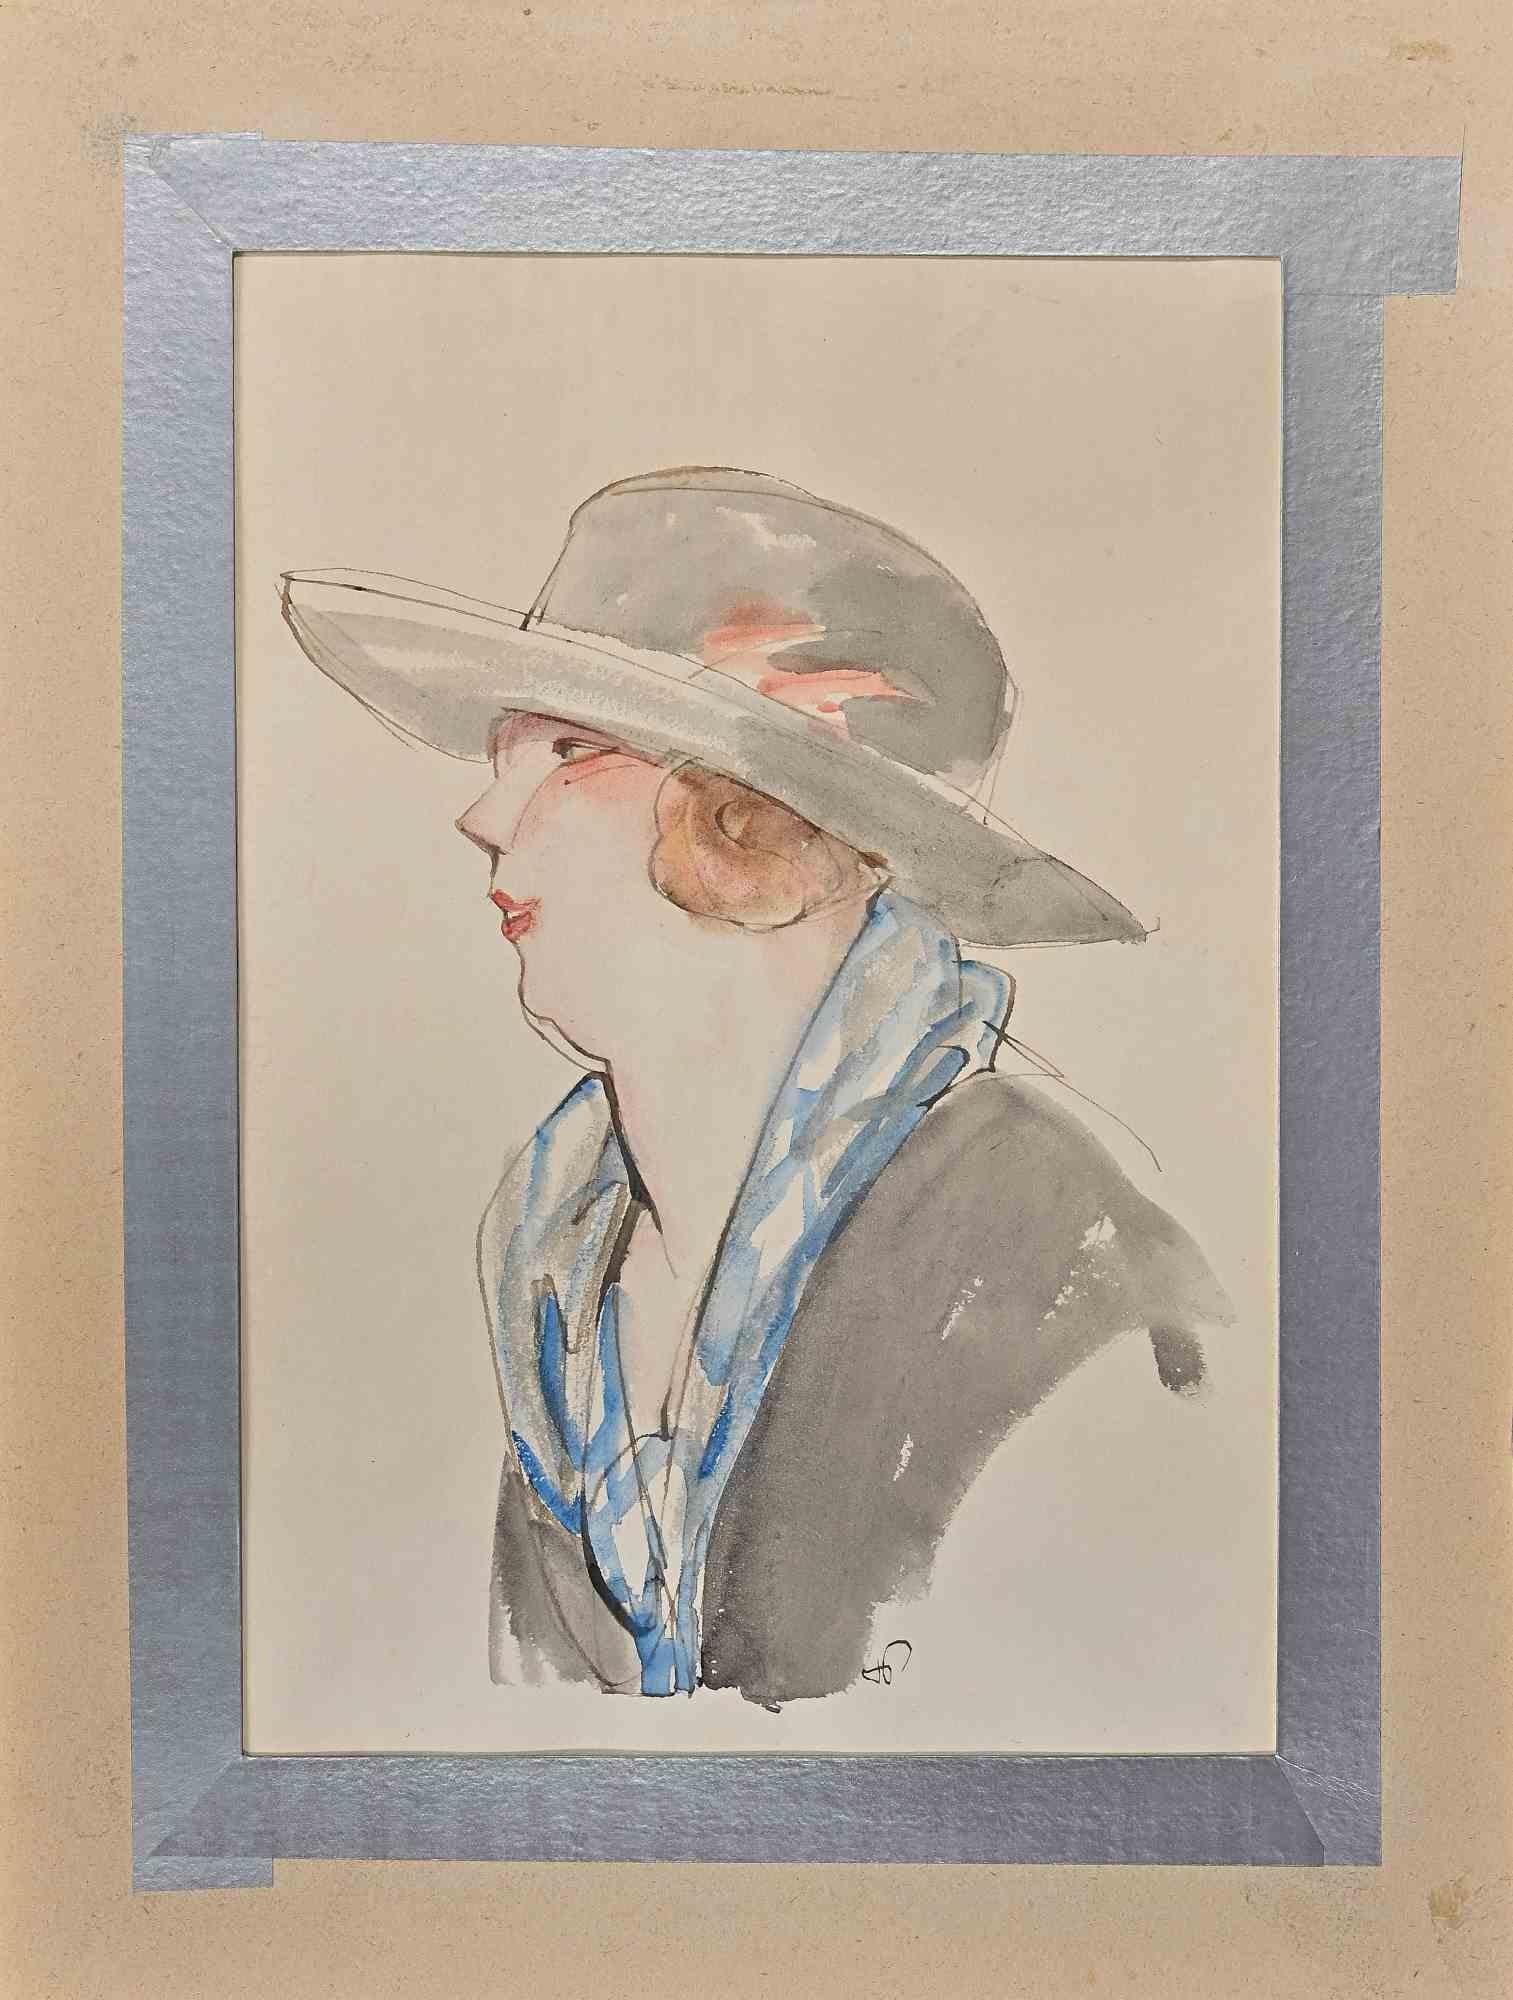 Porträt einer Dame ist eine Bleistift-, Tusche- und Aquarellzeichnung von Hermann Paul.

Handsigniert in der rechten unteren Ecke. Passpartout inklusive cm 40.5x30.5

Guter Zustand.

René Georges Hermann-Paul (27. Dezember 1864 - 23. Juni 1940) war